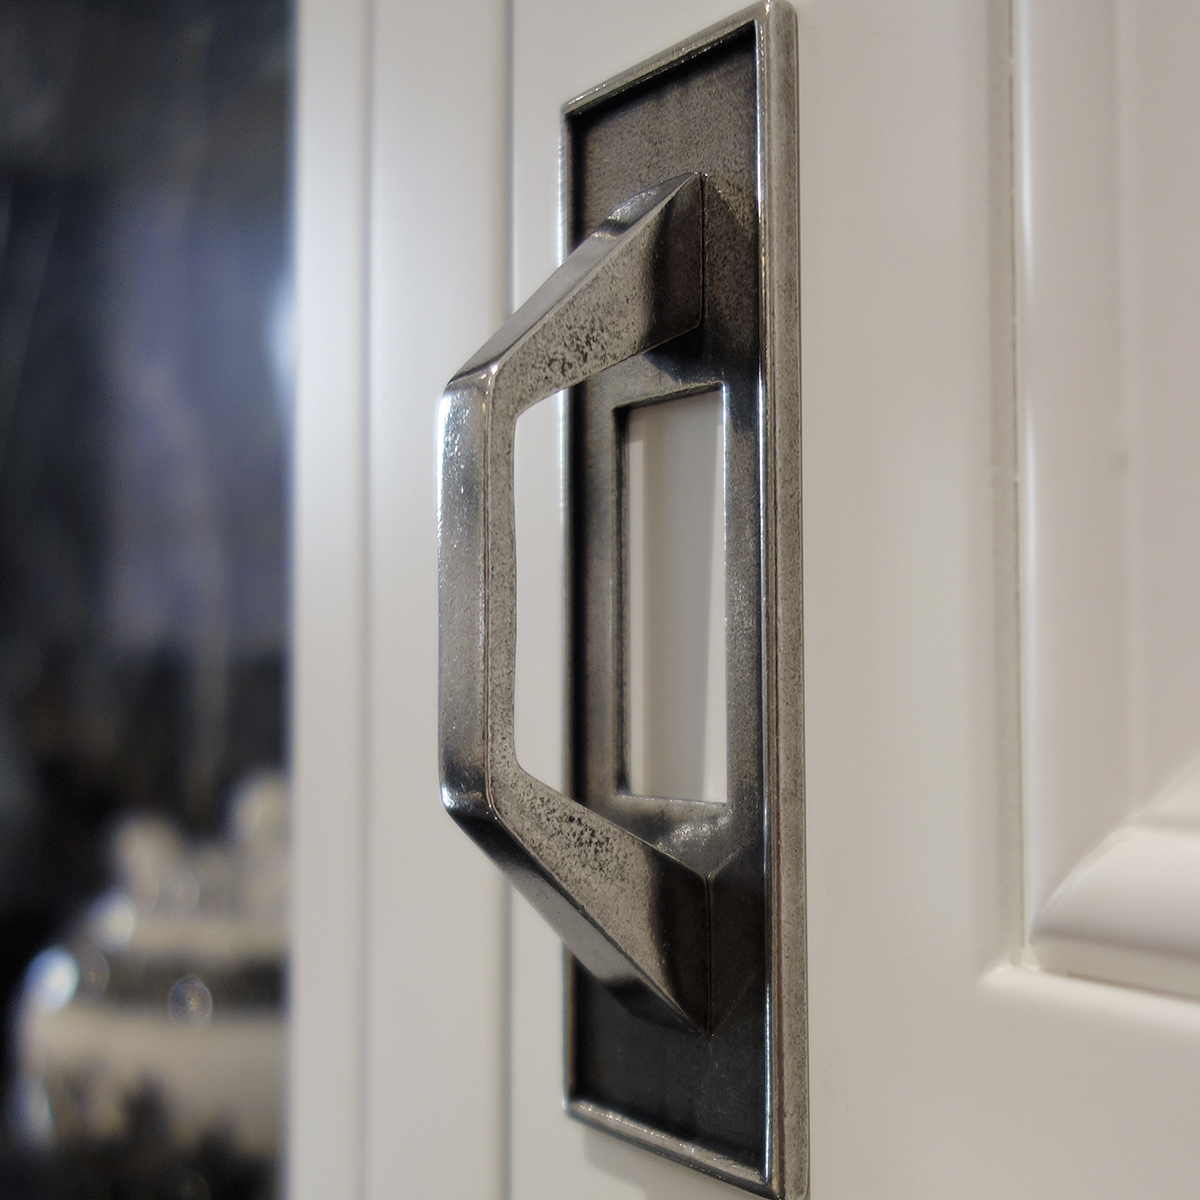 Kitchen cupboard handle on white door